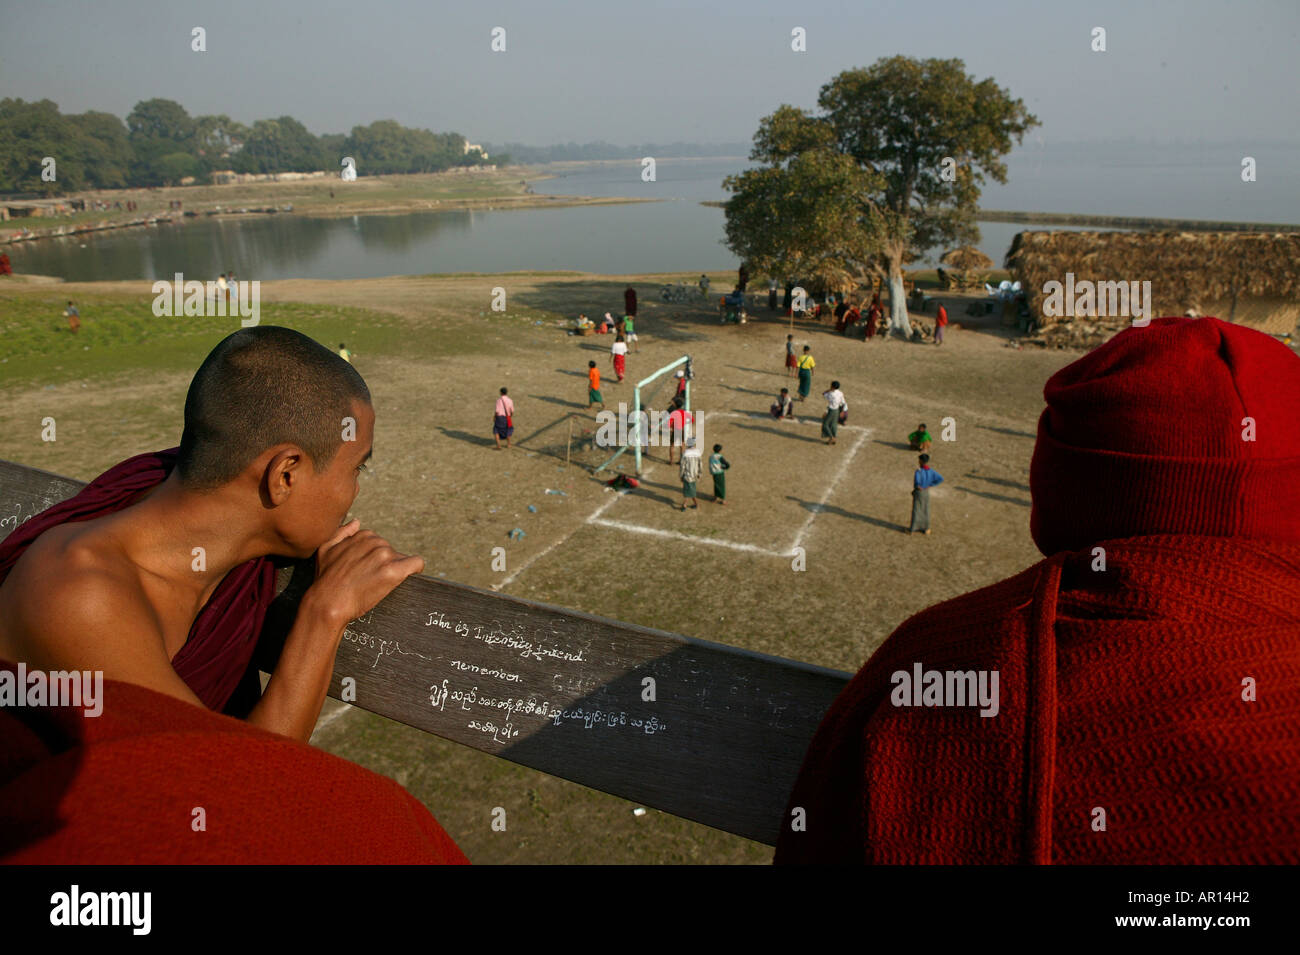 Monks watch football match from U Bein bridge, Moenche beobachten Fussballspiel von der U Bein Bruecke, Amarapura bei Mandalay Stock Photo